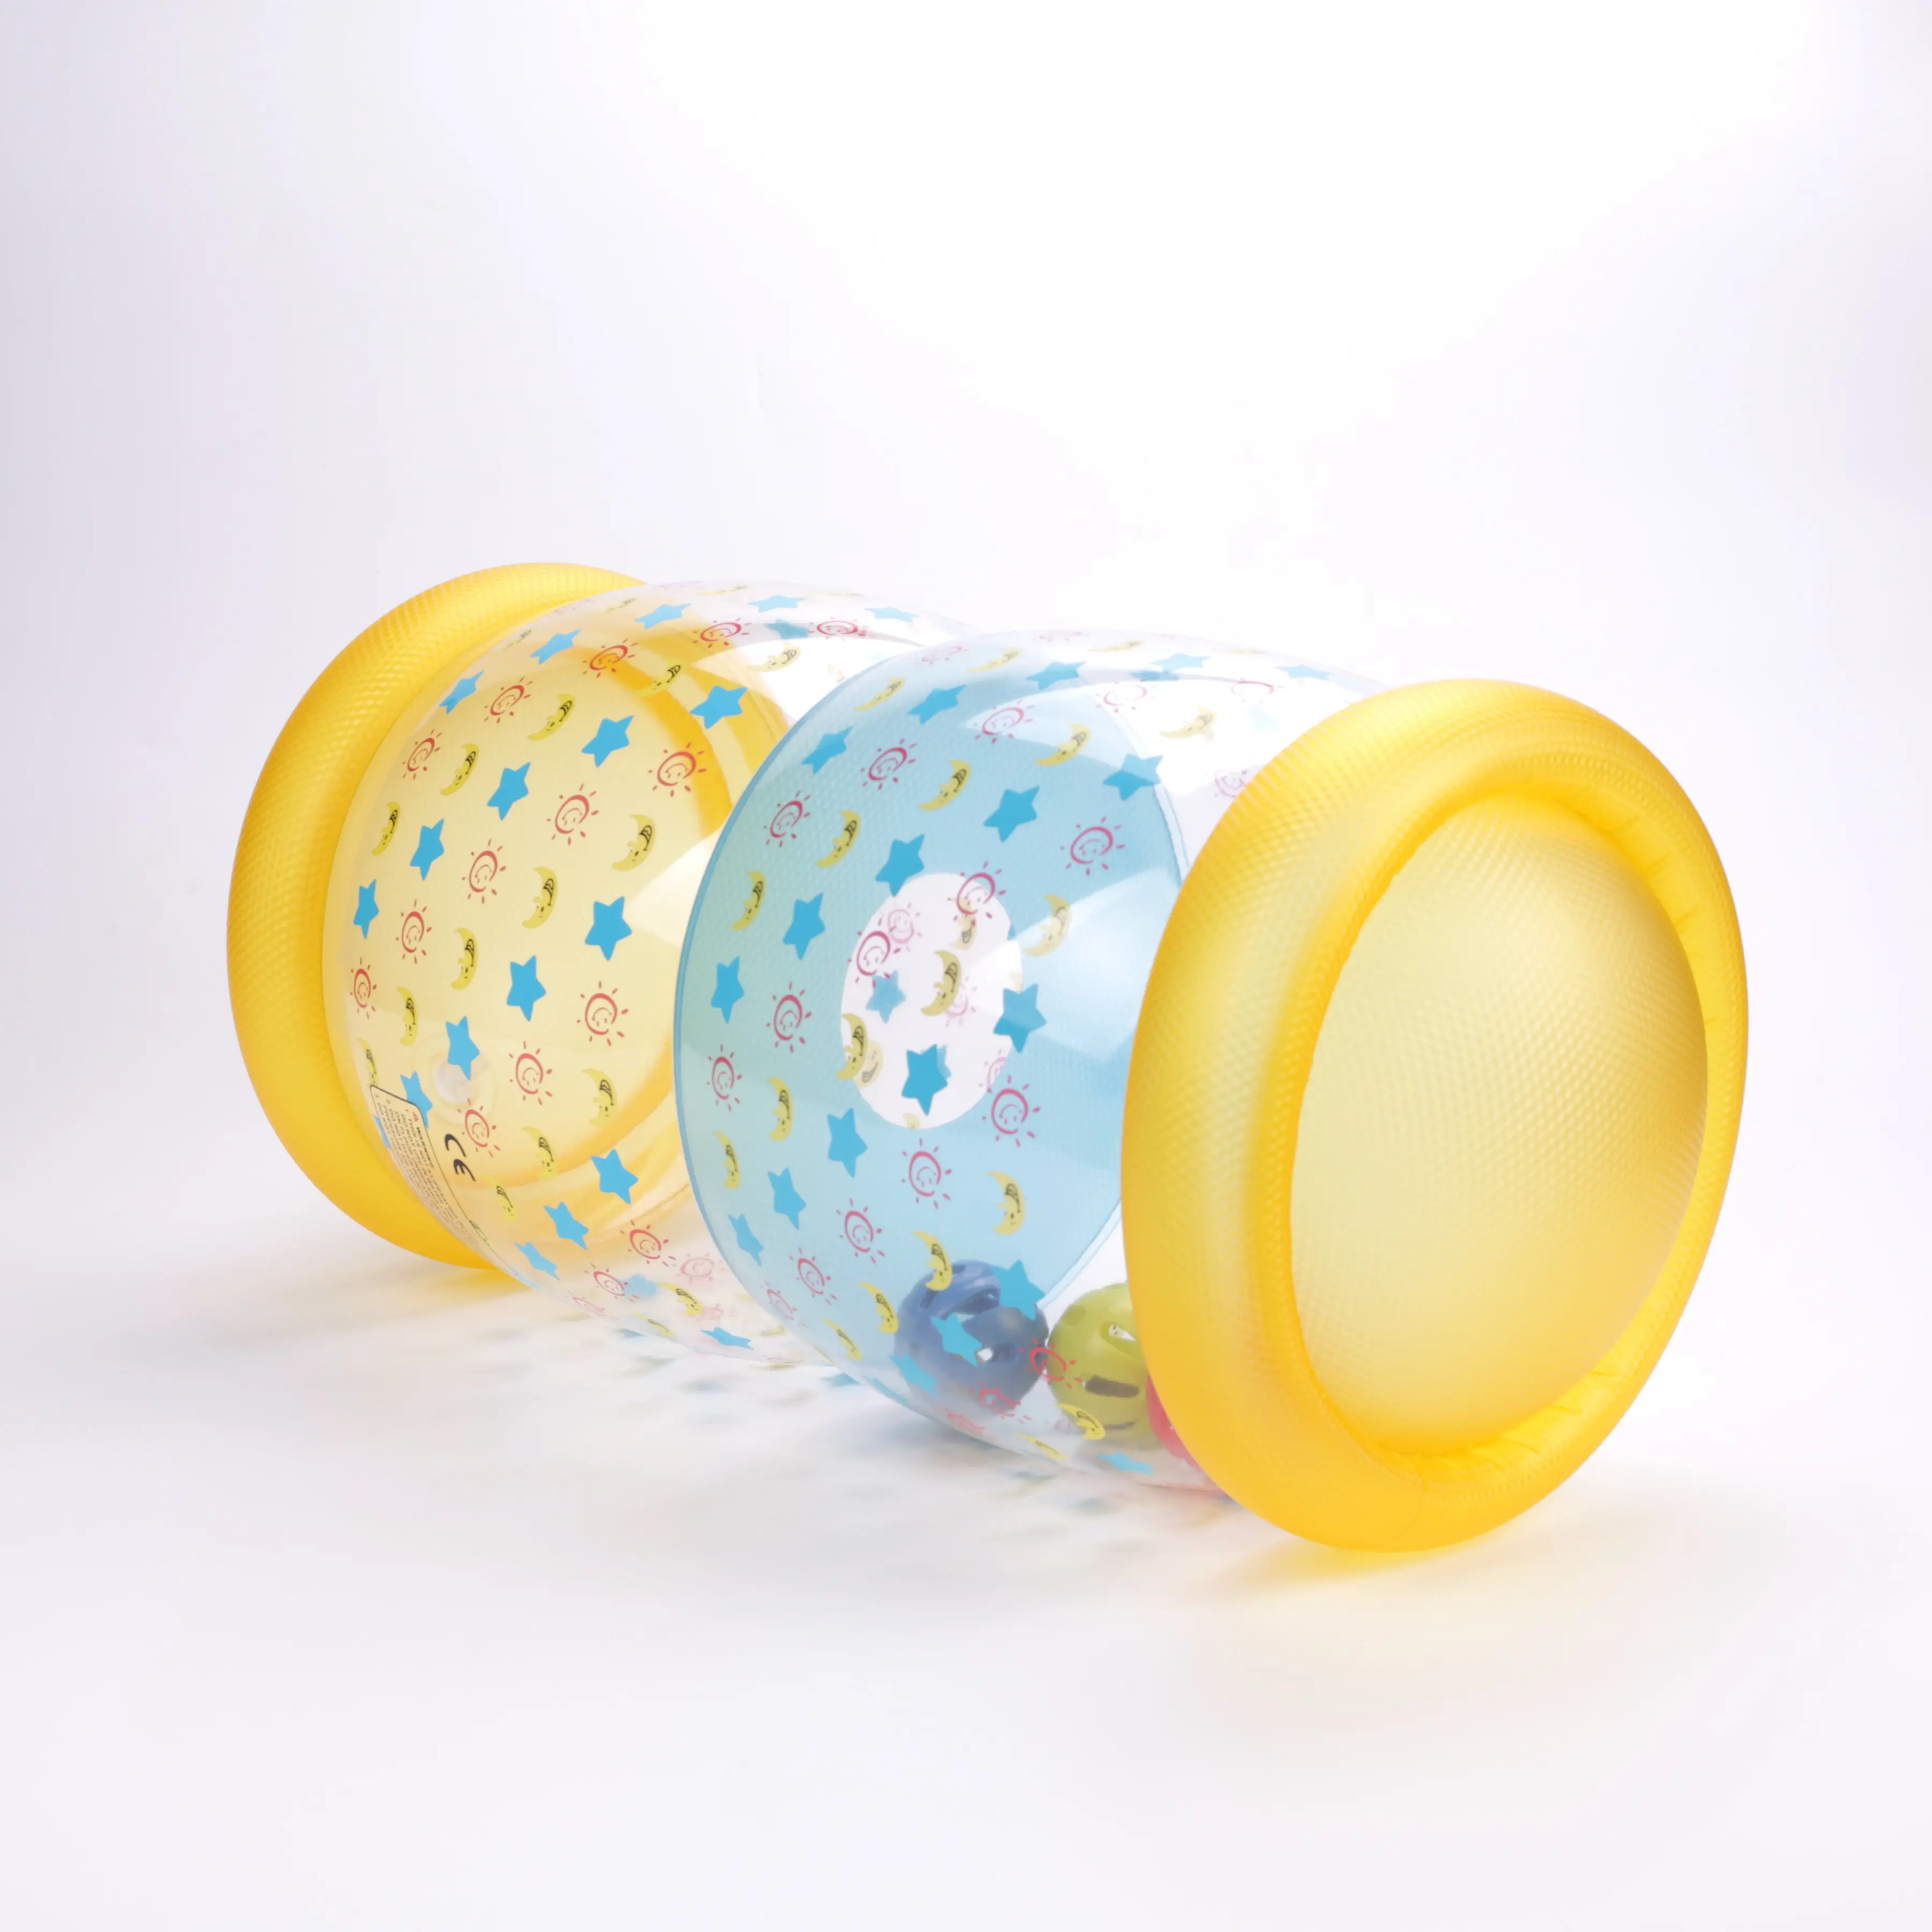 نمط جديد الكرة لتدريب الزحف والوقوف ممارسة مهارات التعلم نفخ الأسطوانة لعبة قابلة للنفخ PVC كيس بلاستيكي شفاف